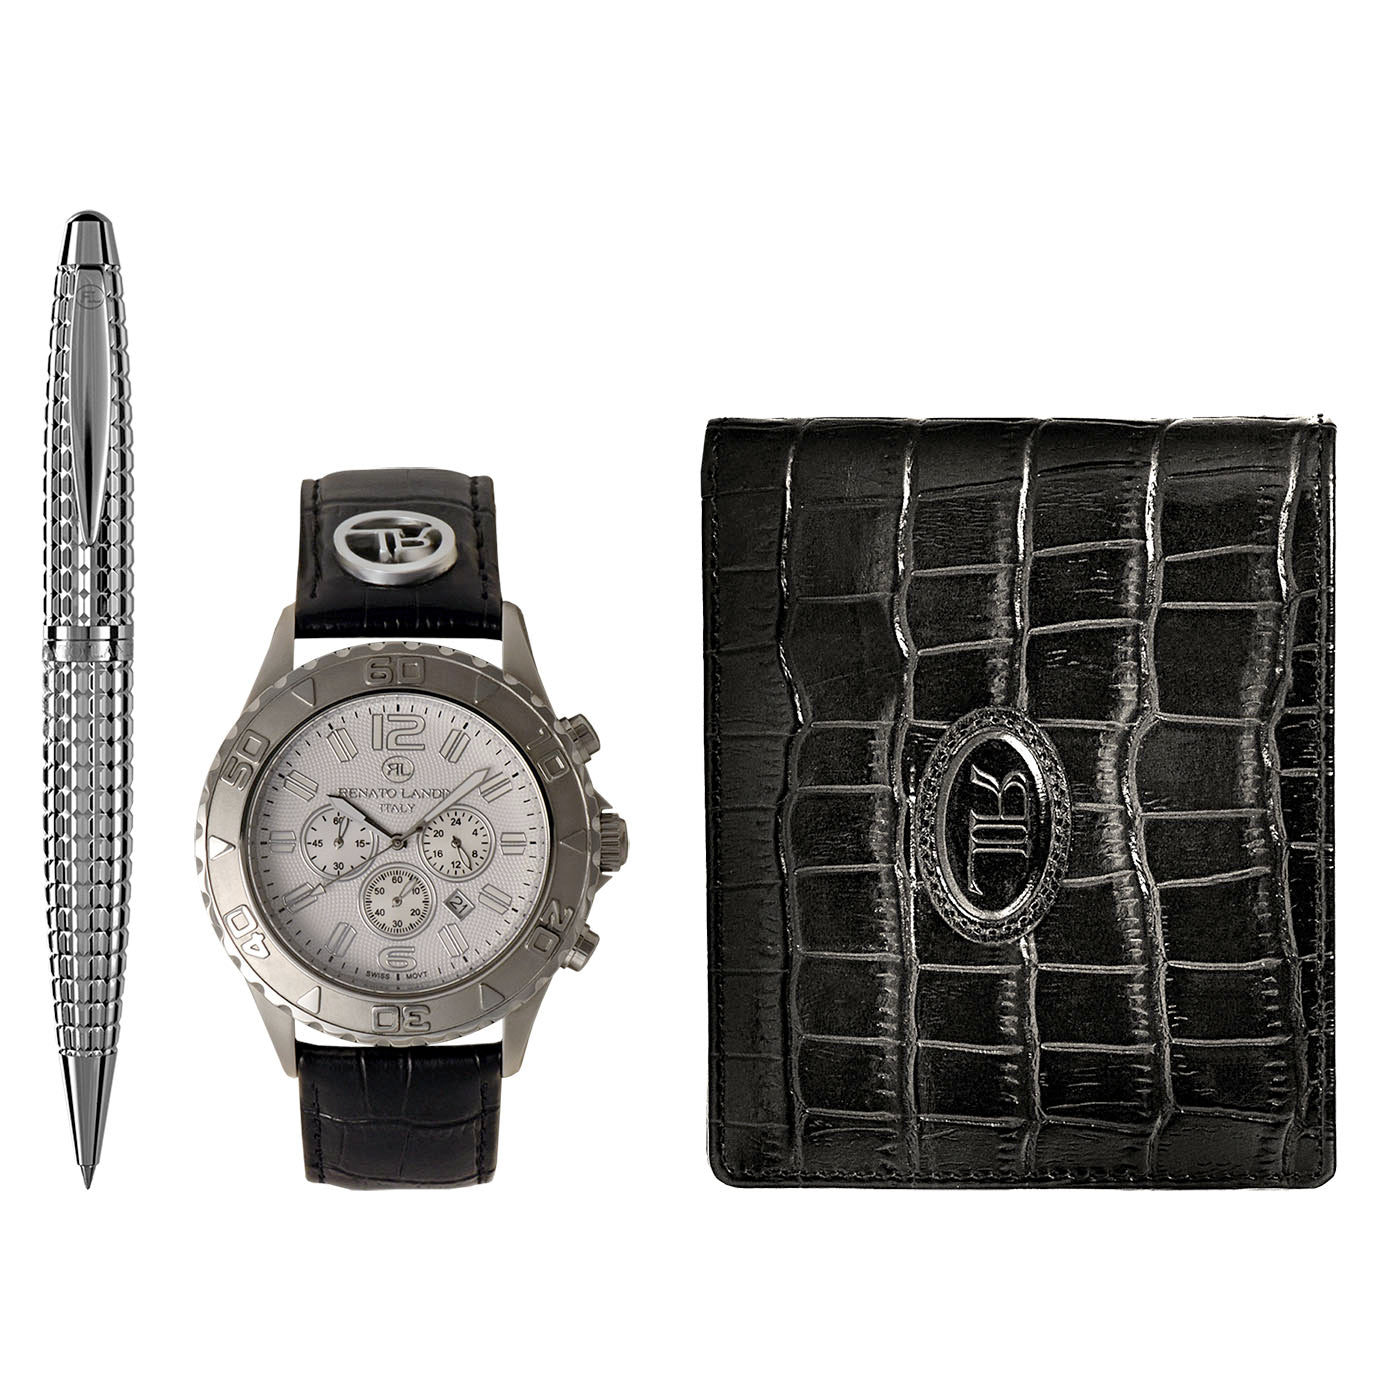 RENATO LANDINI Pen + Wallet + Watch -be